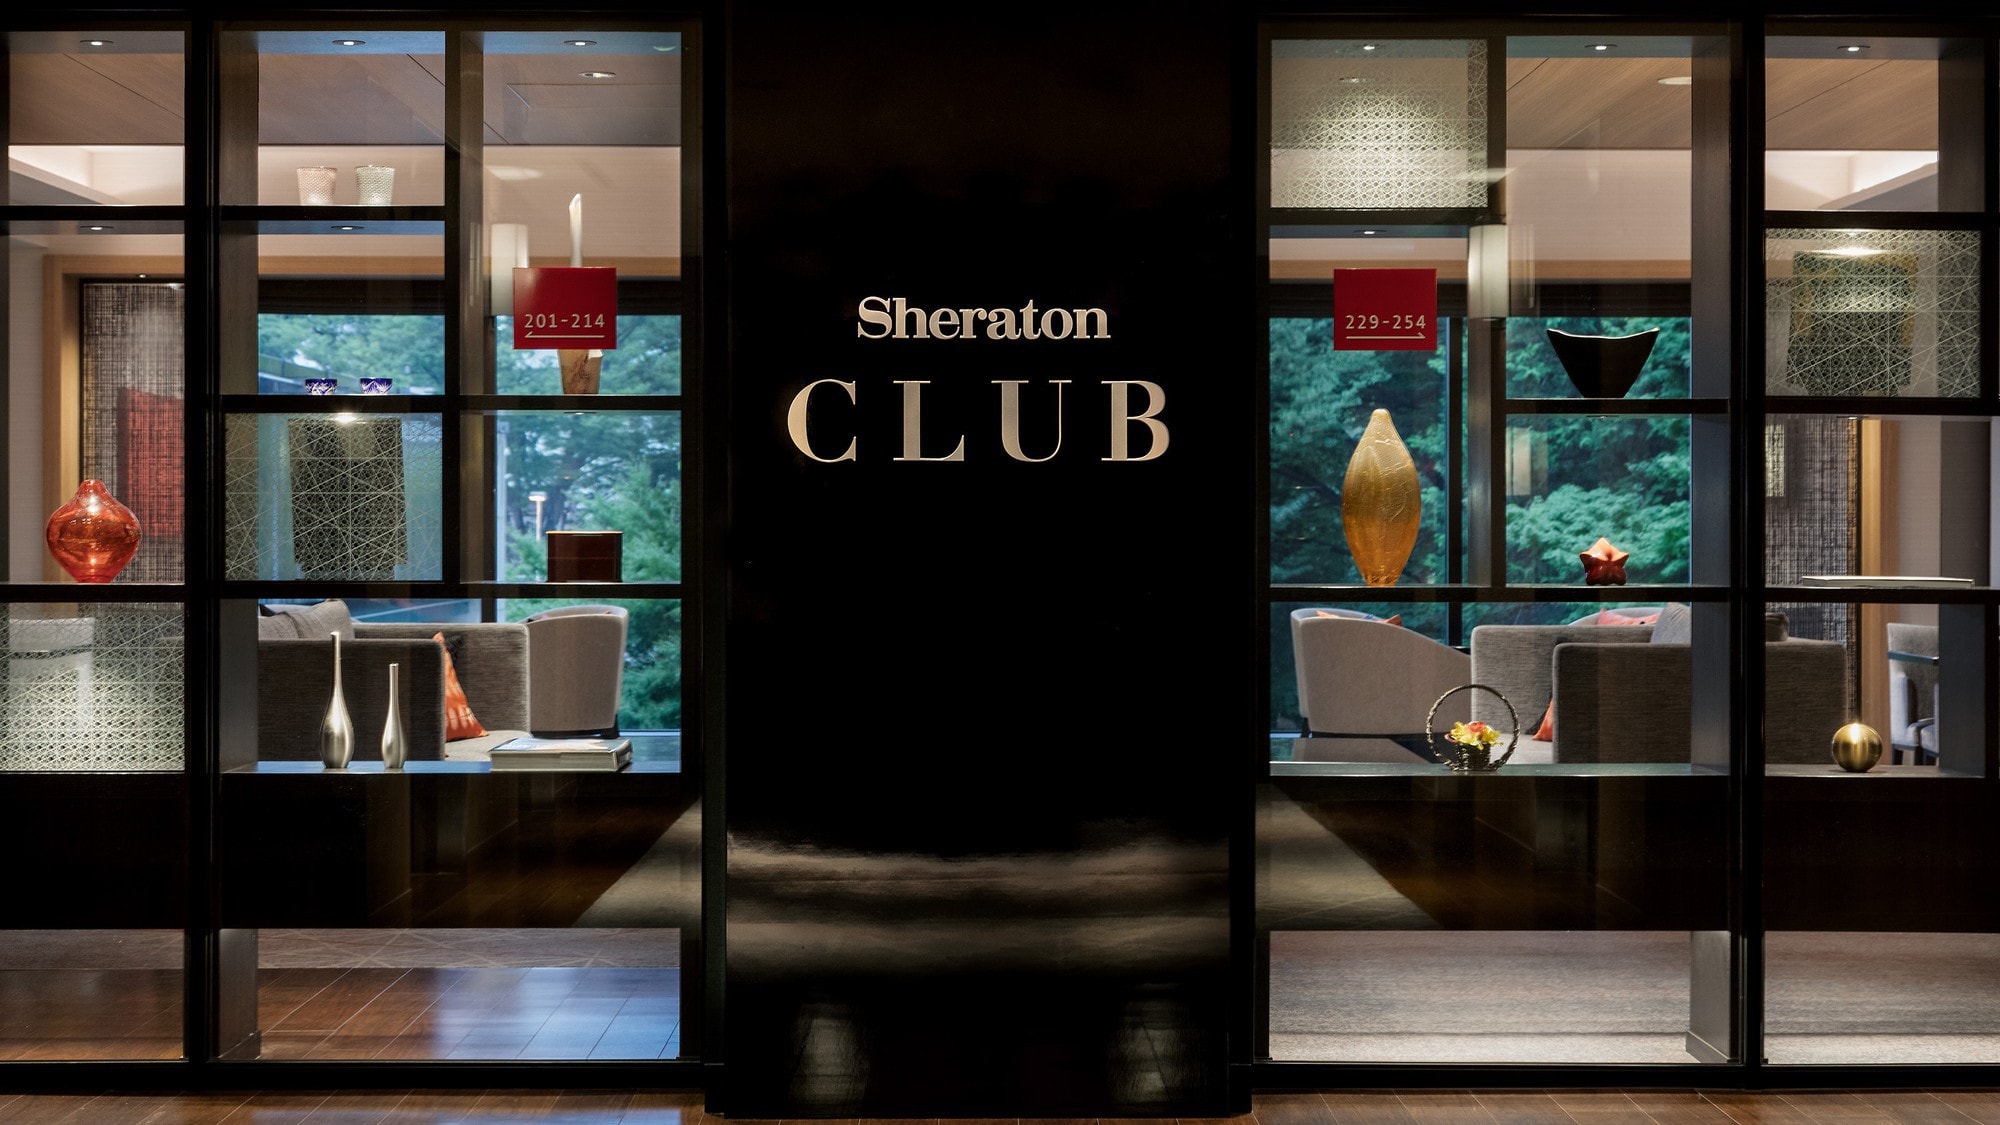 Anda bebas menikmati minuman dan makanan ringan di Sheraton Club Lounge.